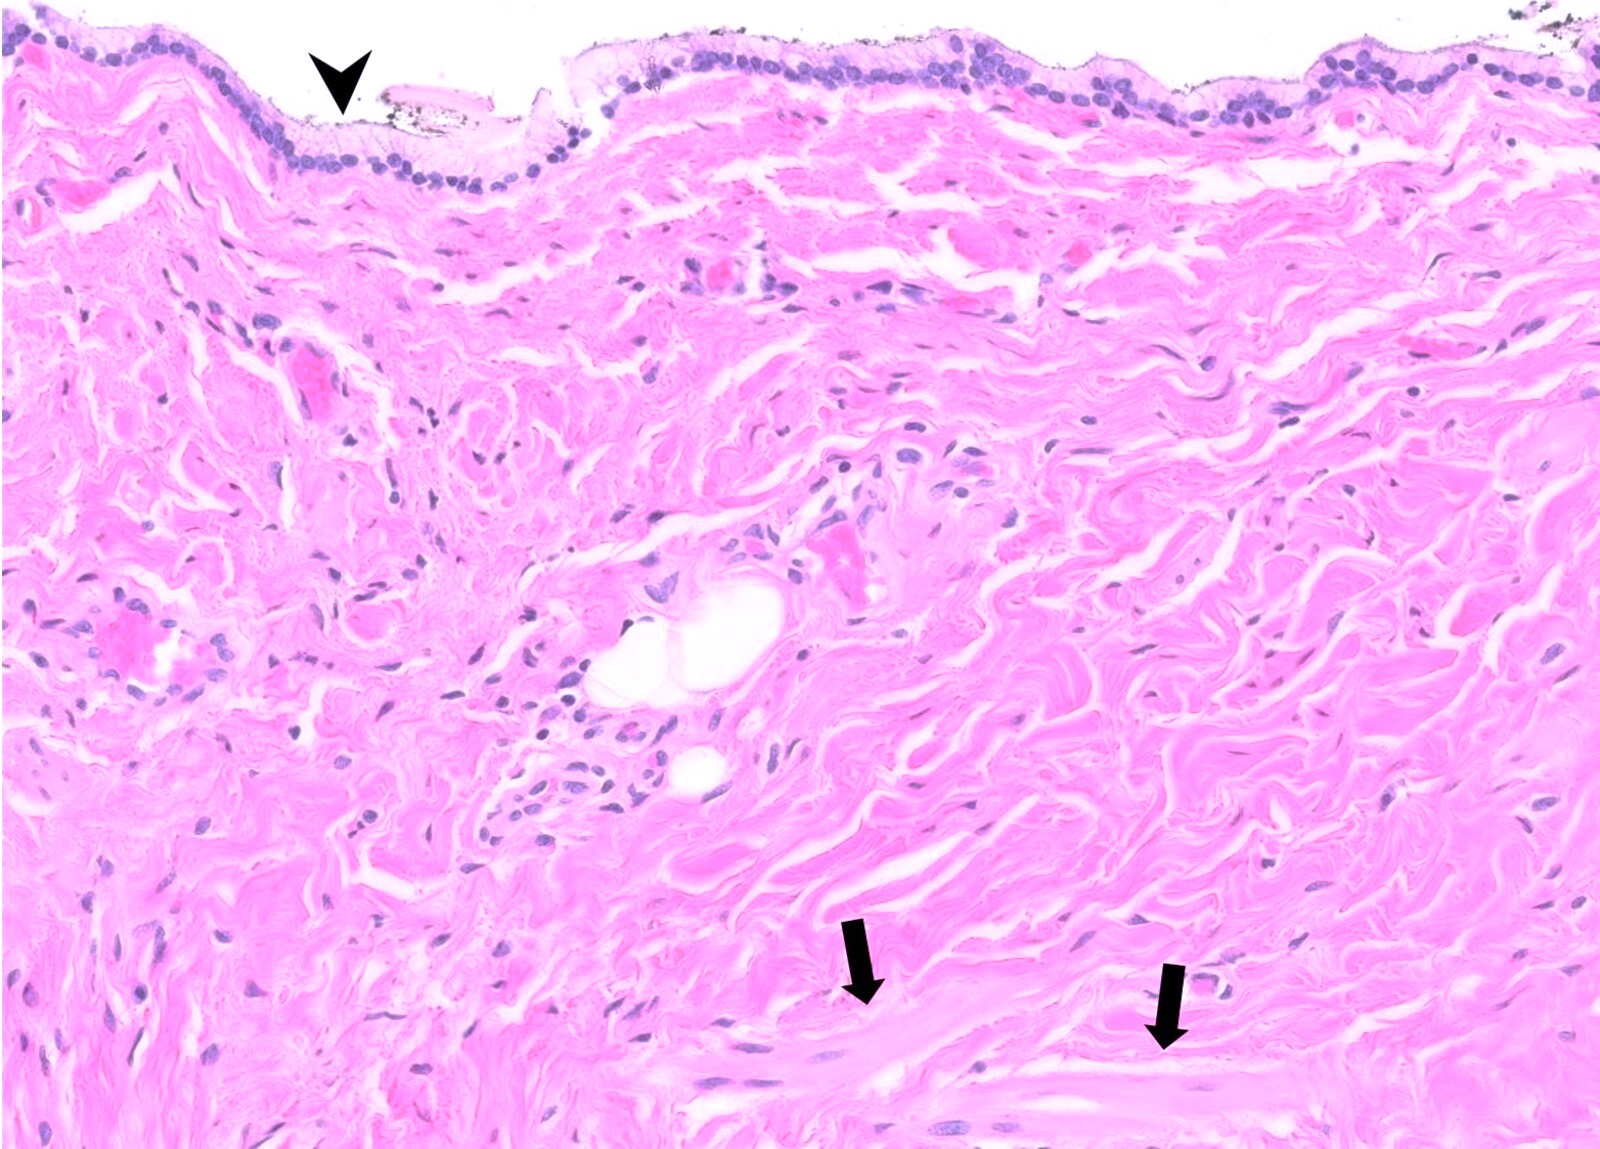 Mucinous columnar epithelium